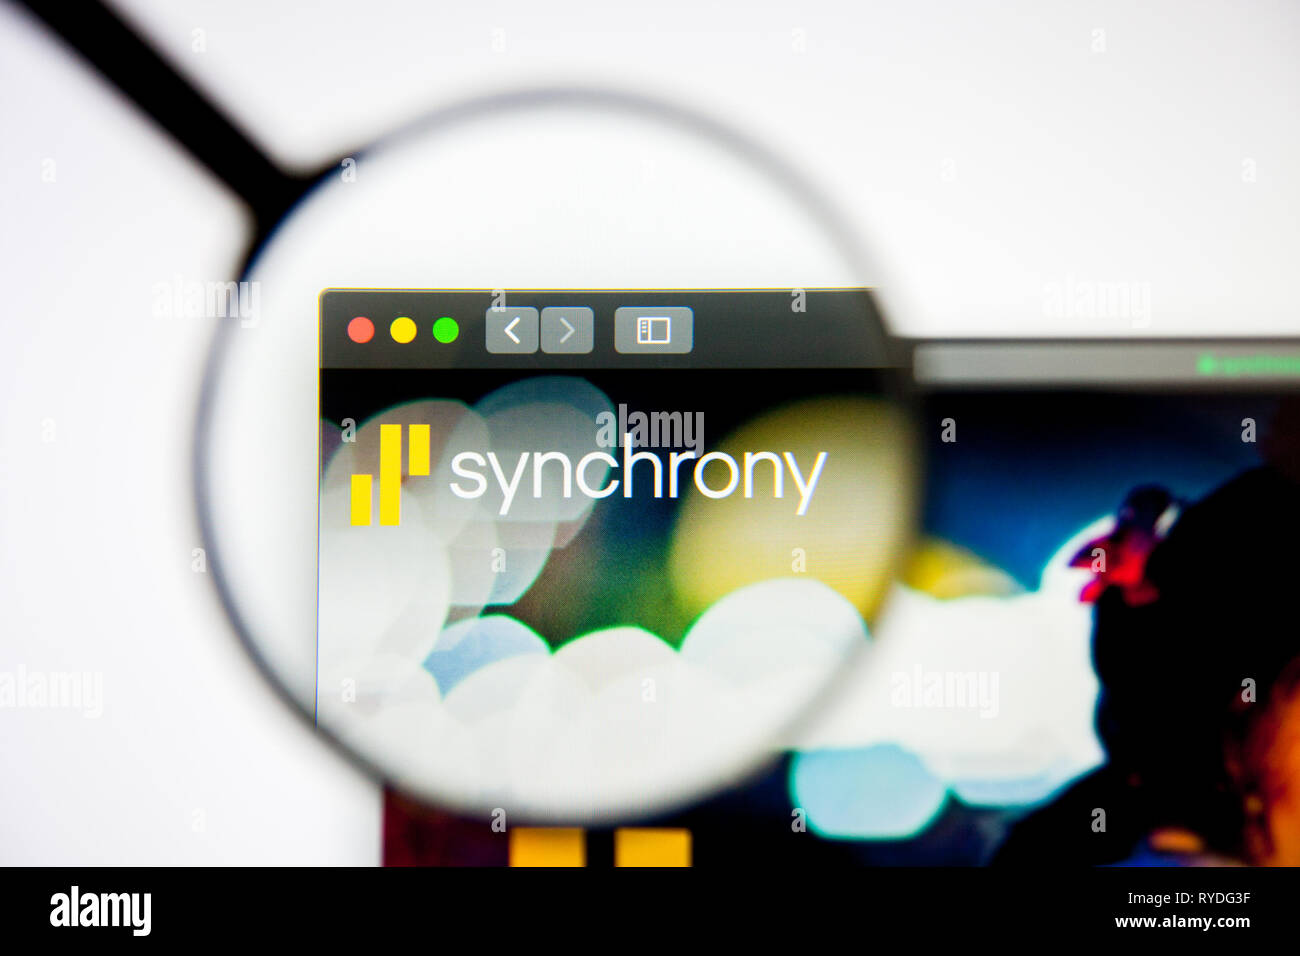 Los Angeles, Kalifornien, USA - 5. März 2019: Synchronie finanzielle Homepage. Synchronizität finanzielle Logo sichtbar auf dem Display, Illustrative Stockfoto